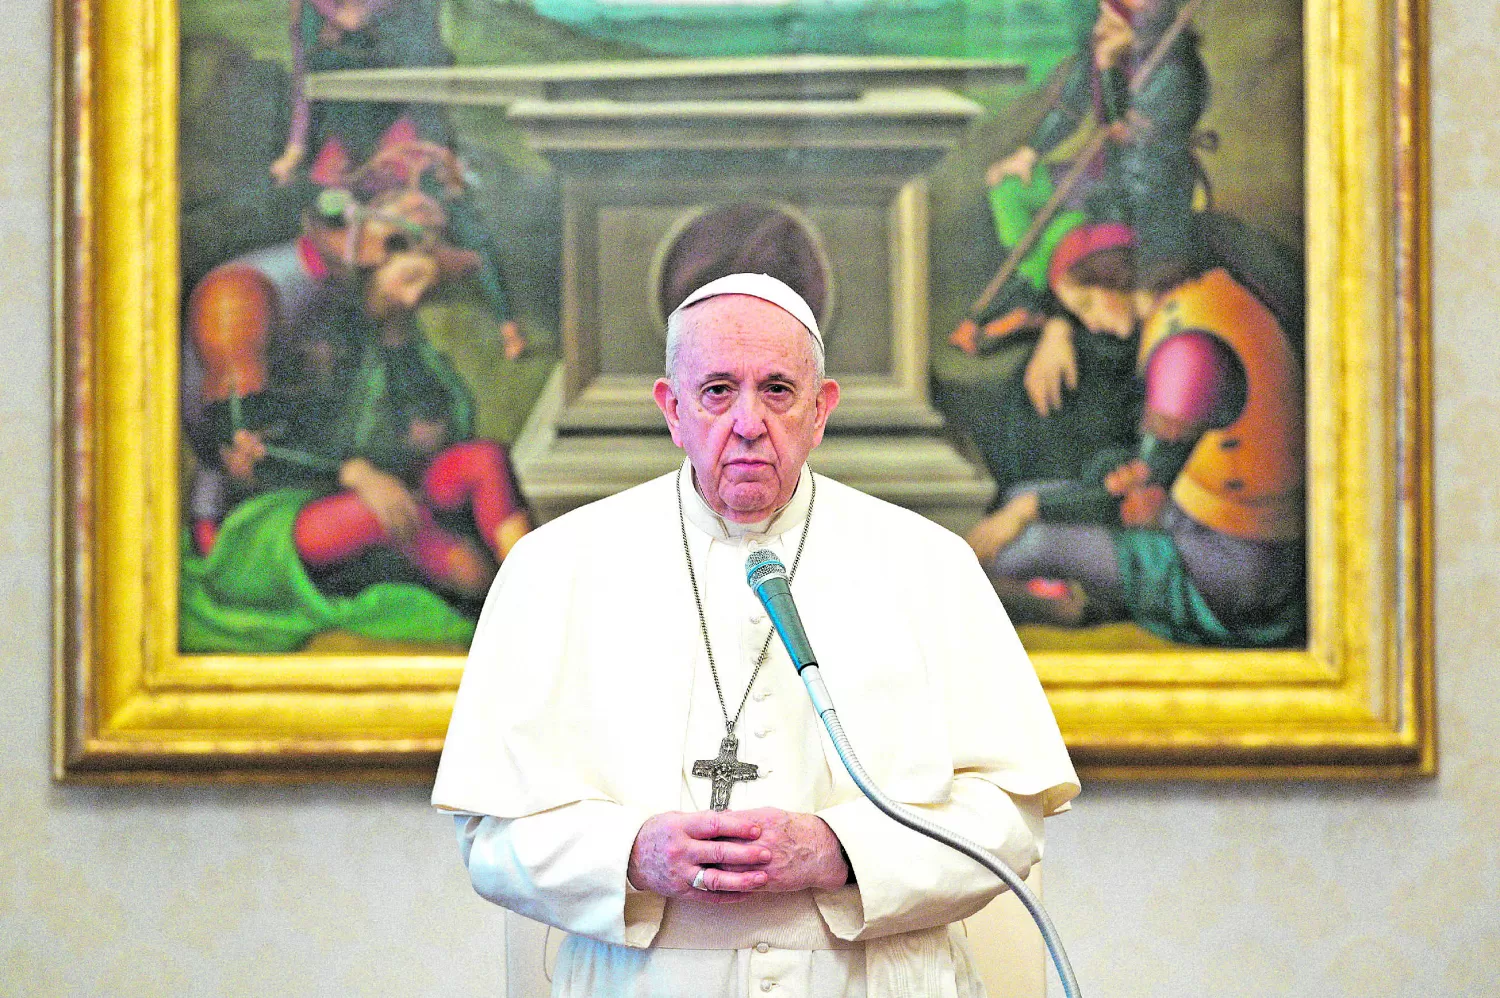 Mensaje papal: “cambiar el modo de pensar”